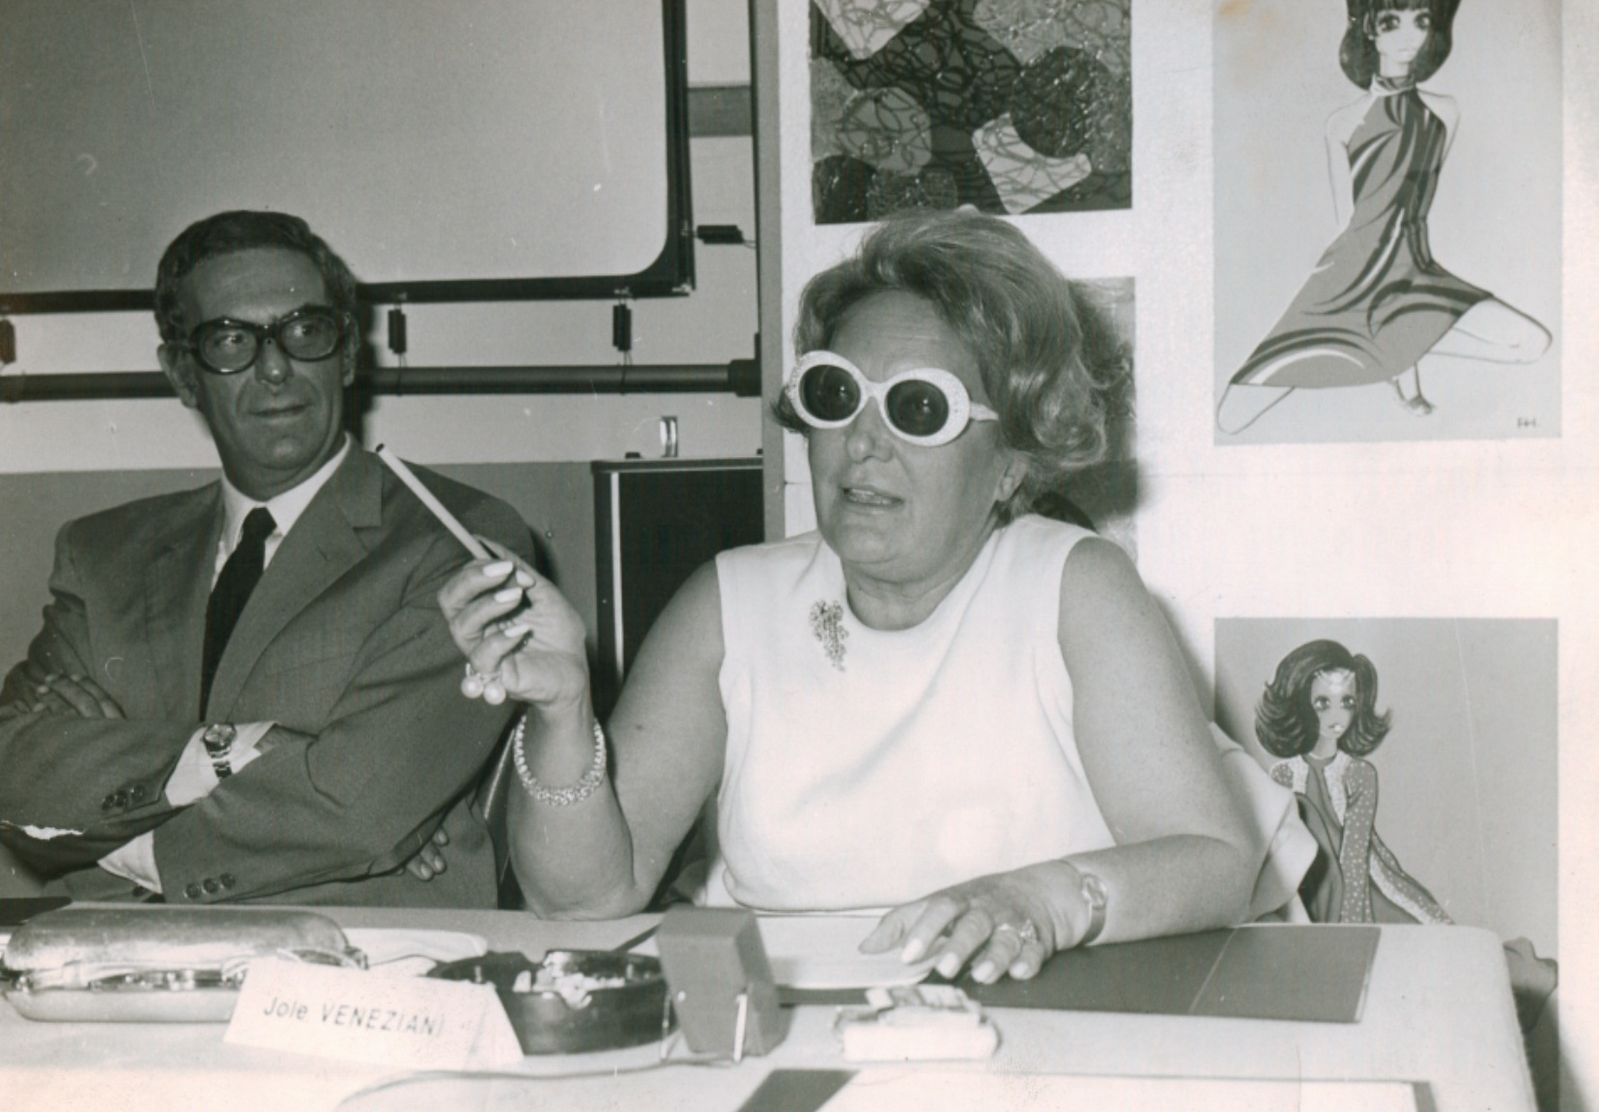 Jole Veneziani in una conferenza all'istituto Marangoni nel 1968